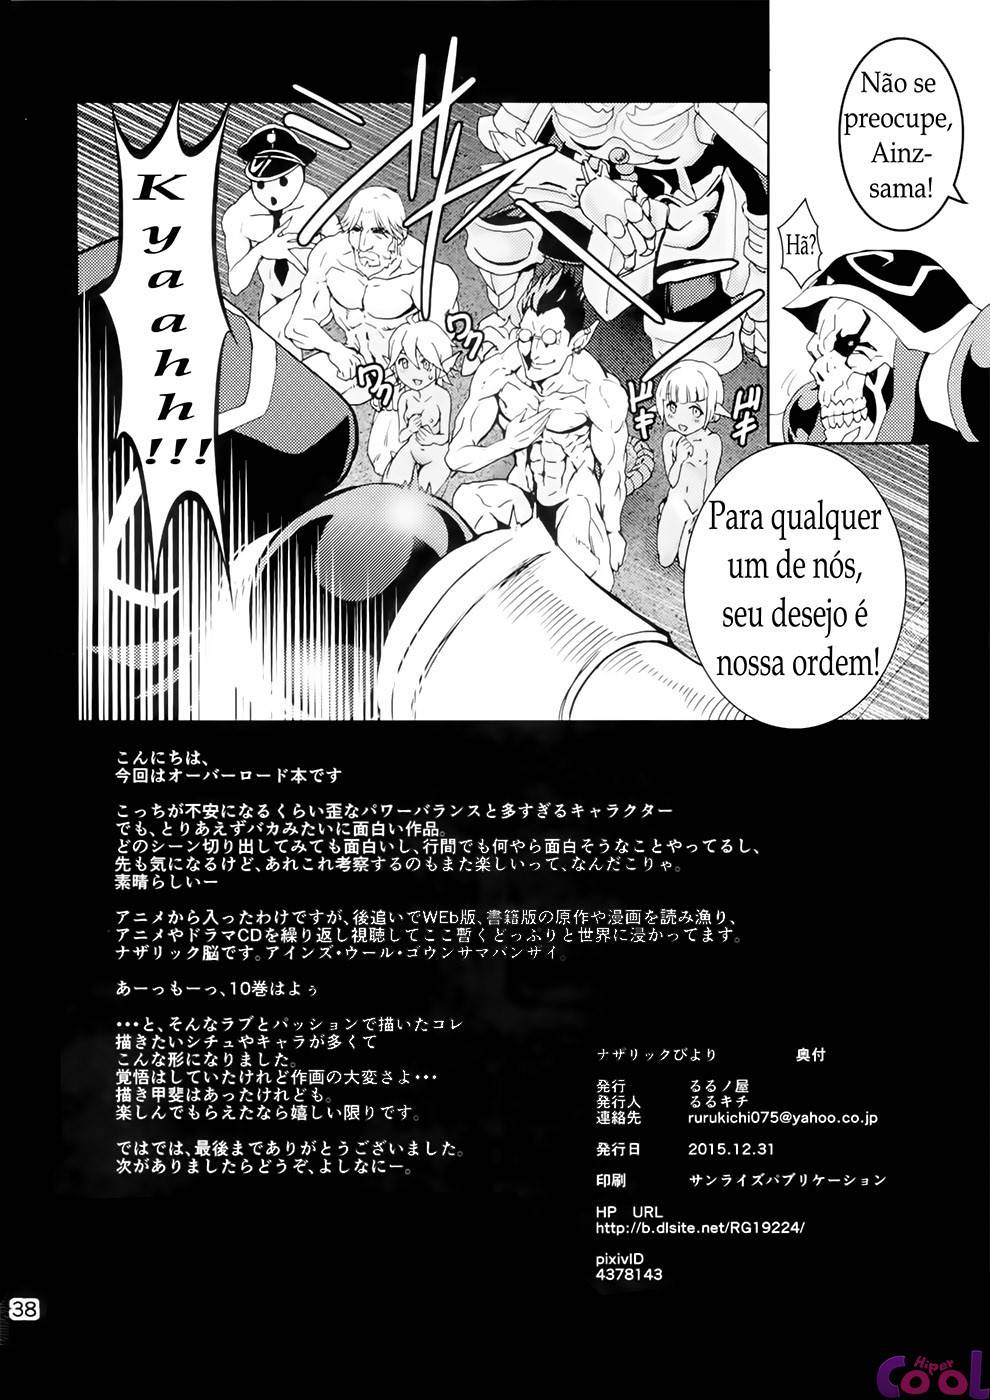 nazarick-biyori-chapter-01-page-37.jpg